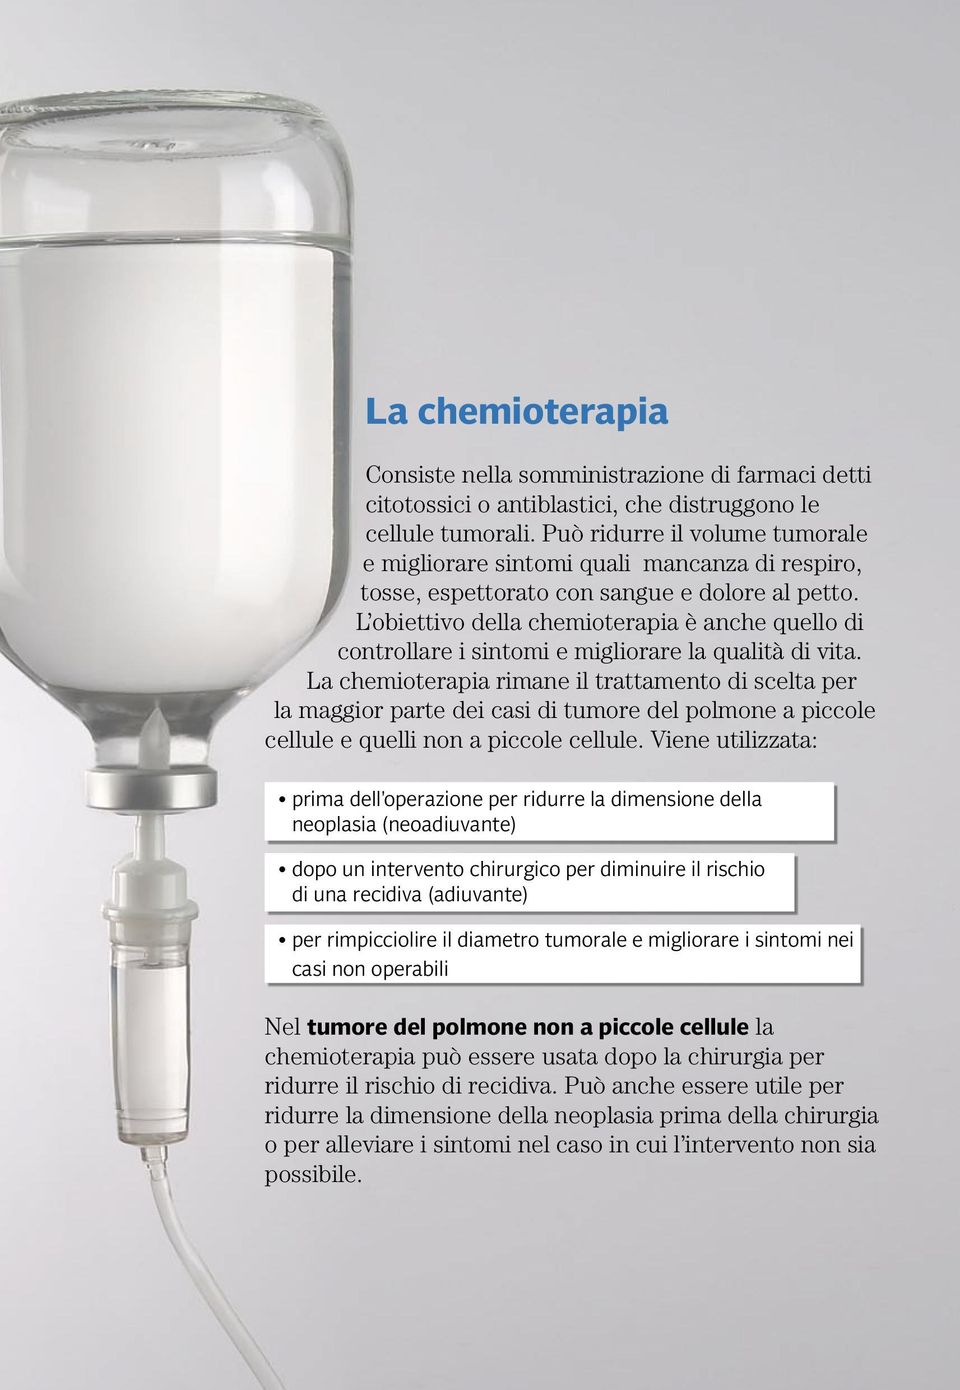 L obiettivo della chemioterapia è anche quello di controllare i sintomi e migliorare la qualità di vita.